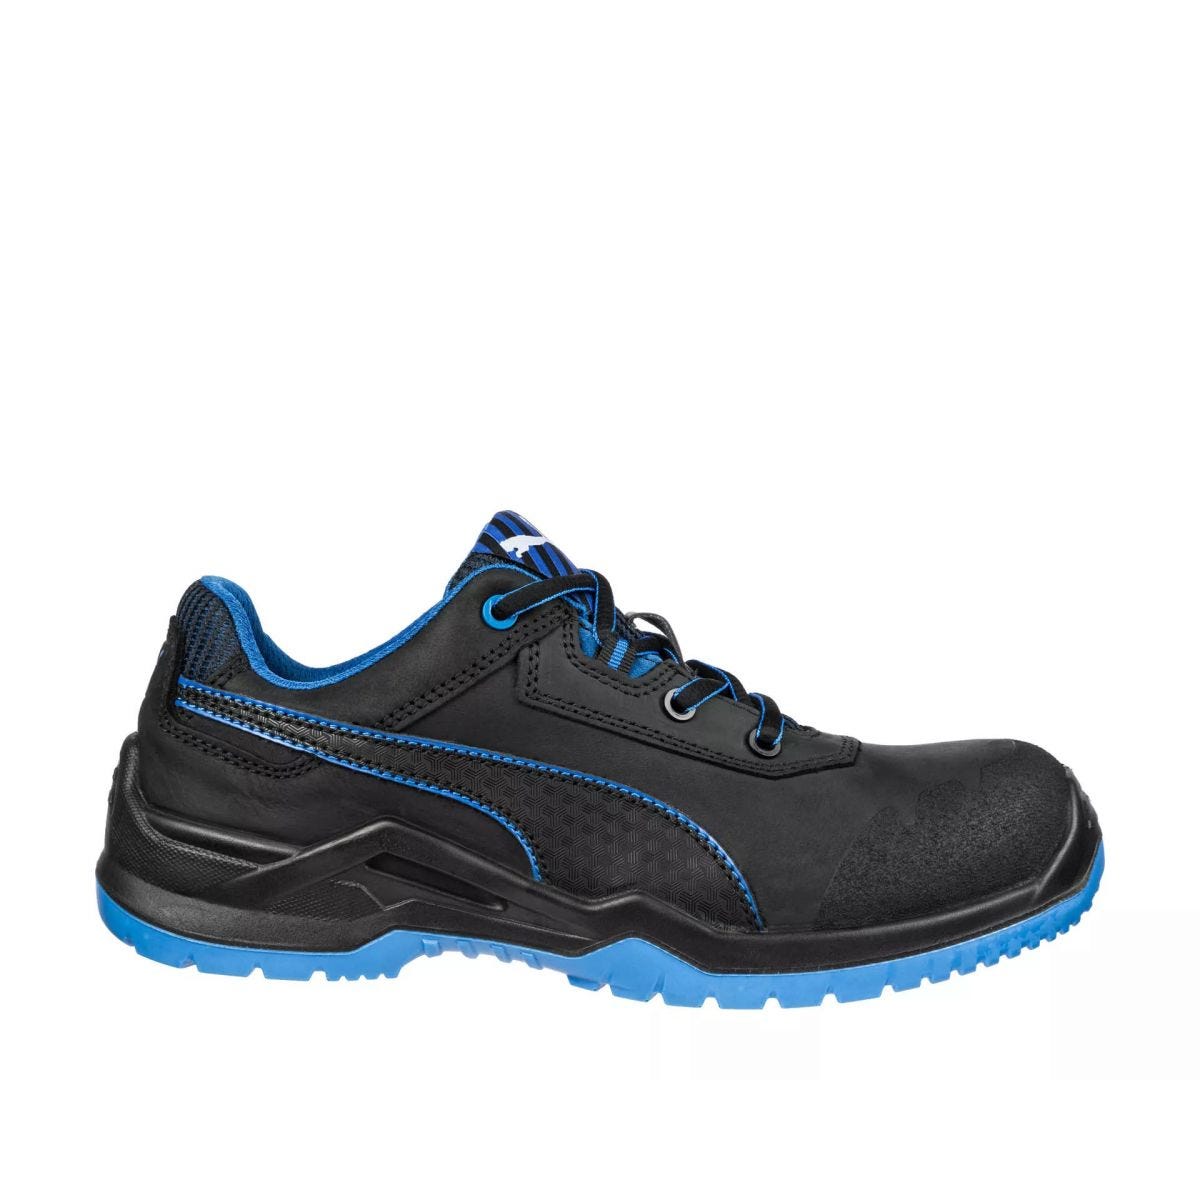 Chaussures de sécurité Argon RX low S3 ESD SRC bleu - Puma - Taille 44 0